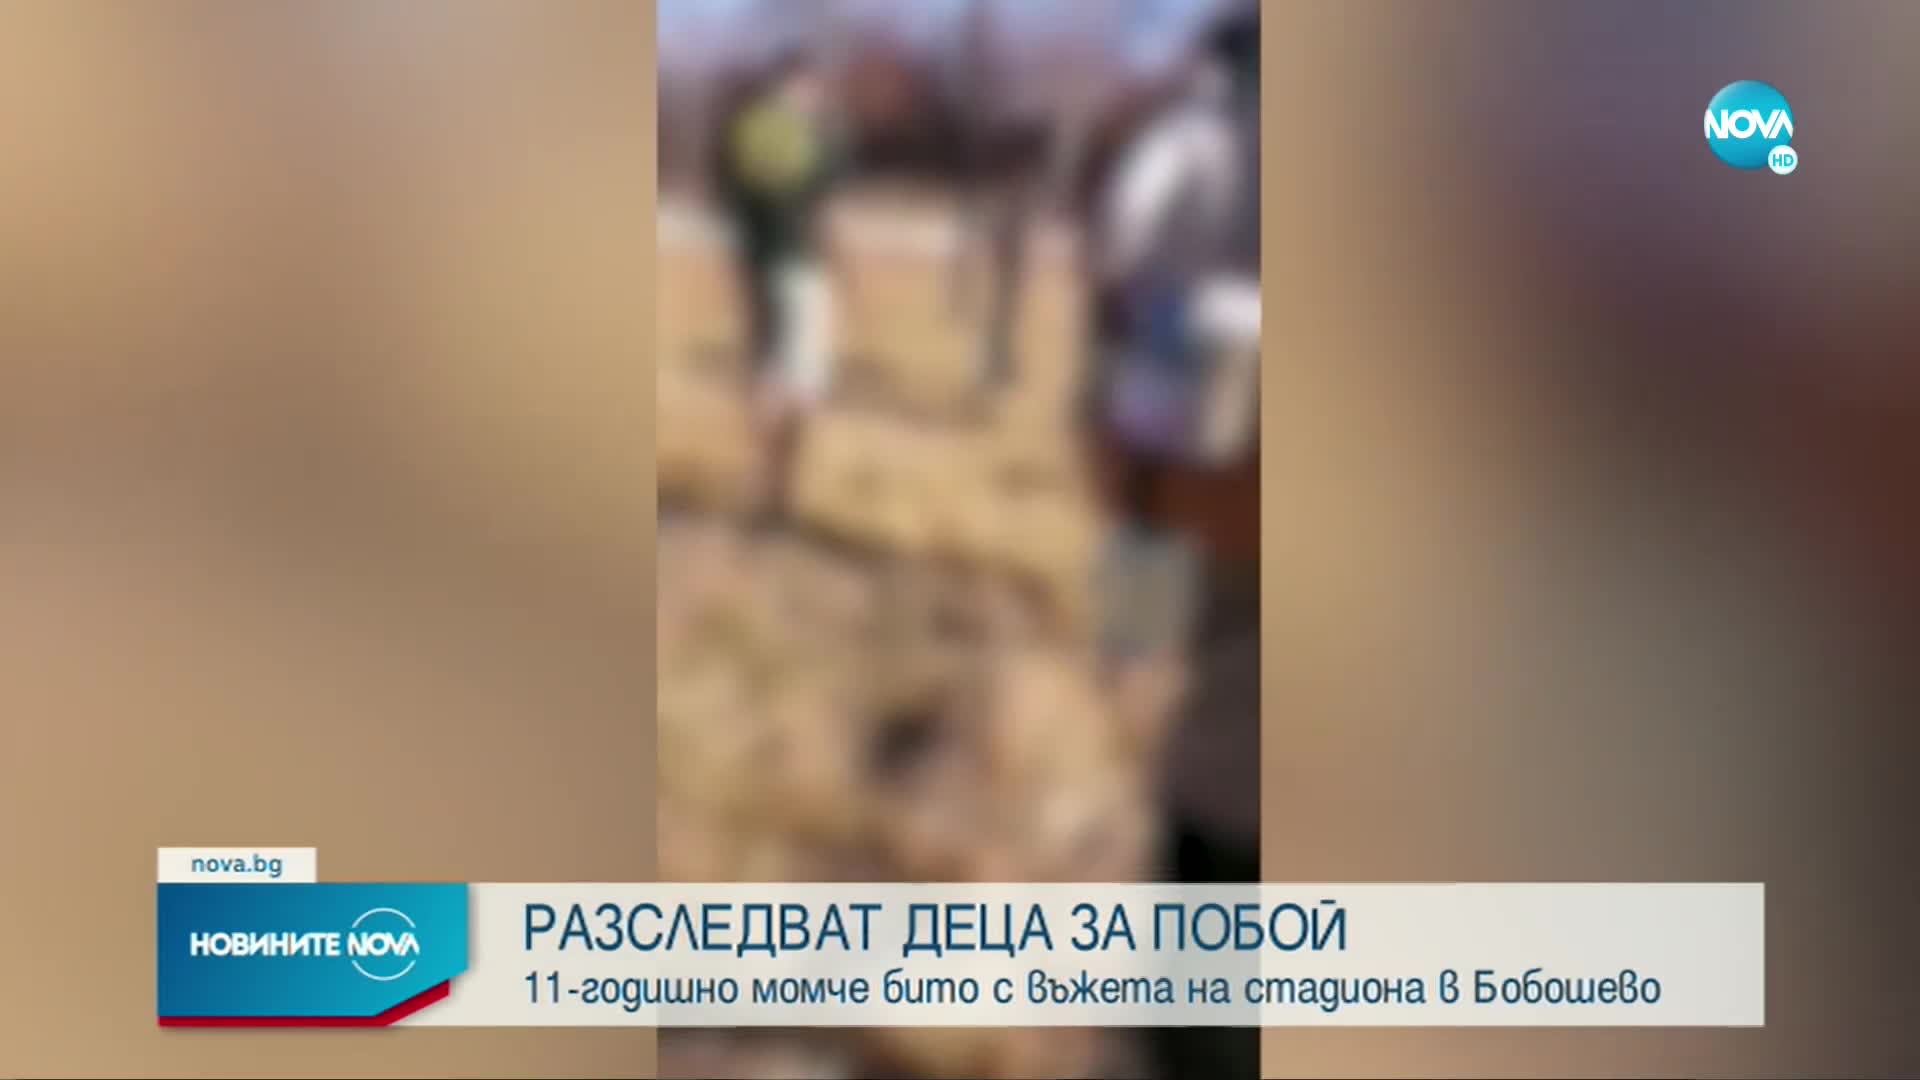 Разследват деца за побой с камшик над техен приятел в Бобошево